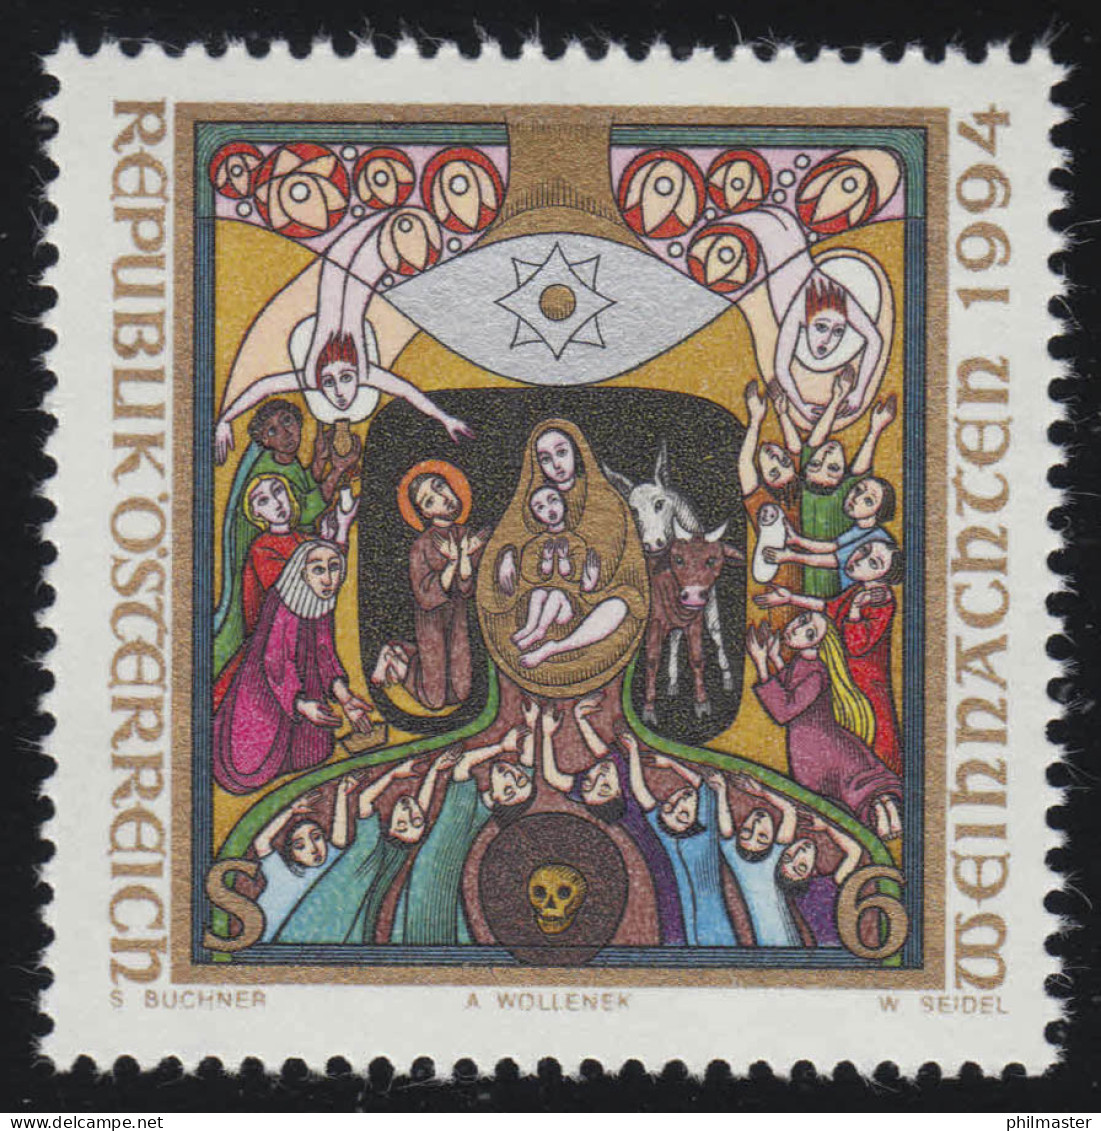 2144 Weihnachten: Christi Geburt, Reliefikone V. A. Wollenek, 6 S Postfrisch ** - Unused Stamps